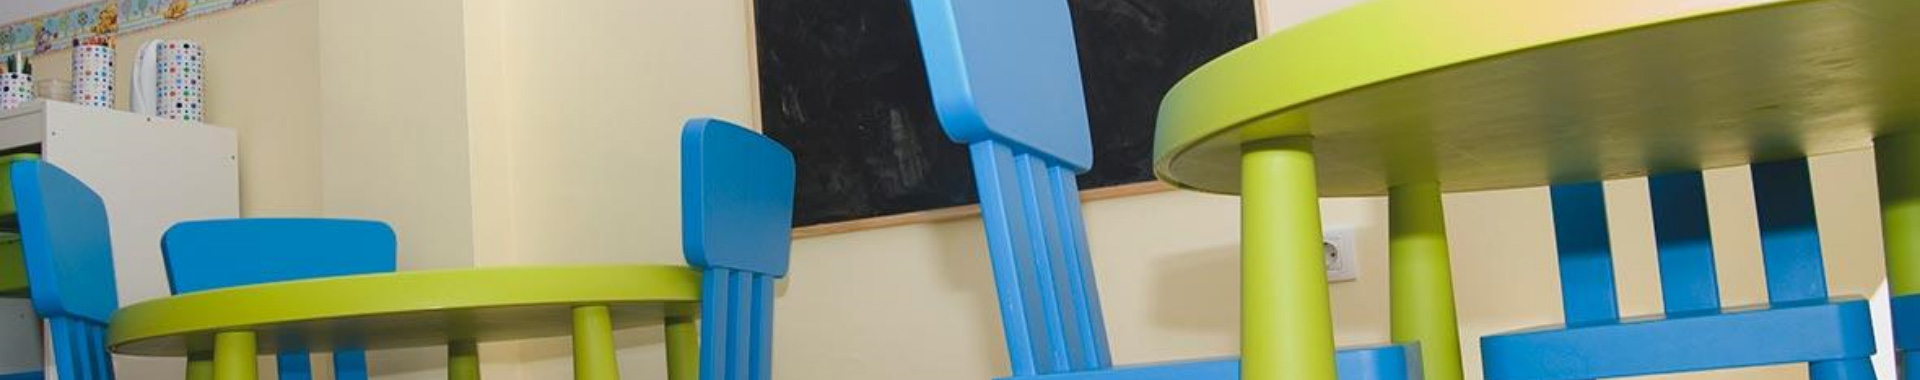 Sillas y mesas de la guardería de un colegio